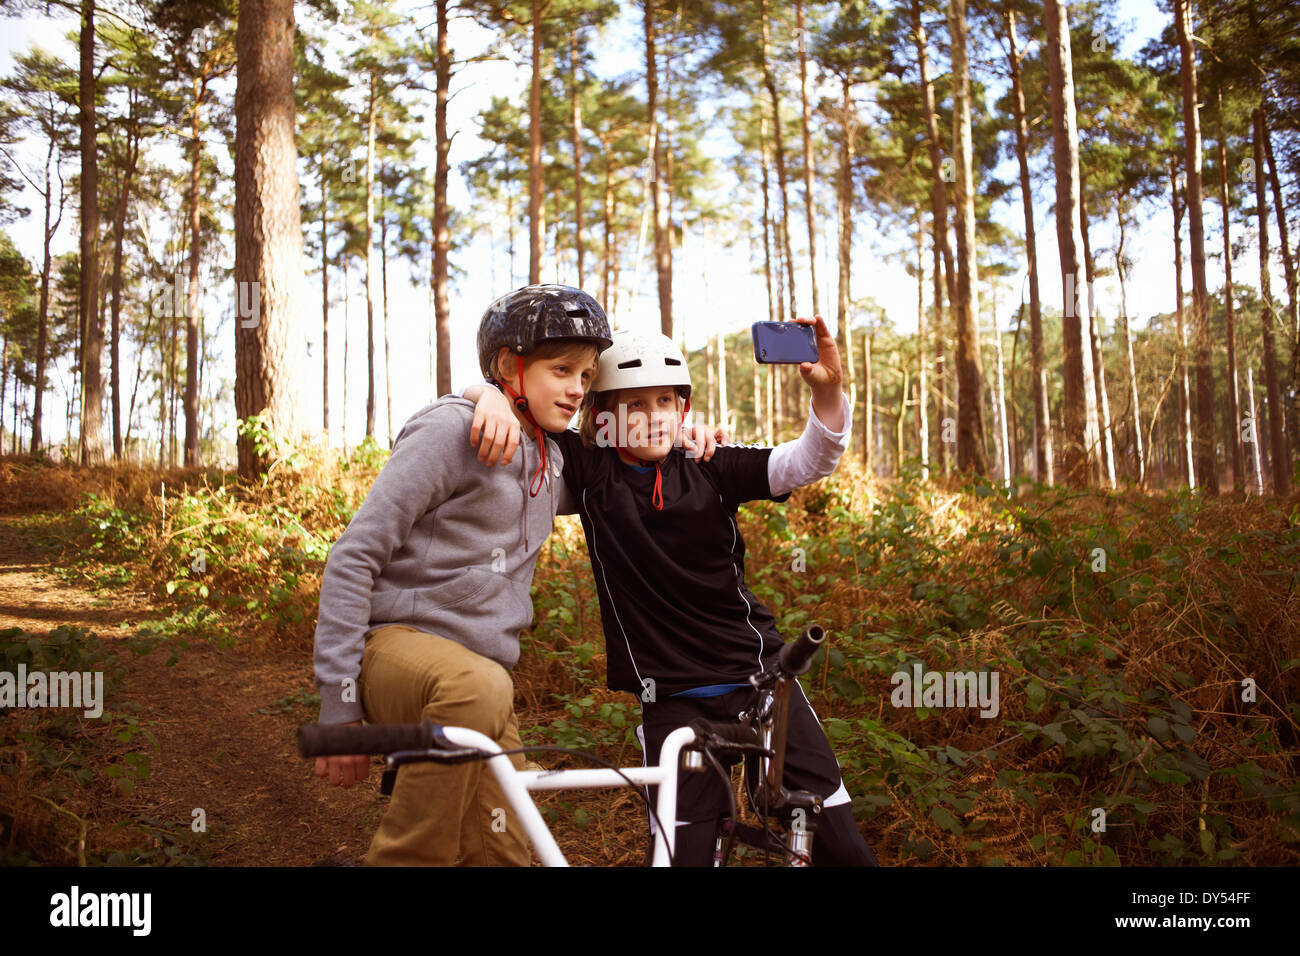 Zwillingsbrüder auf BMX-Räder unter Selbstporträt Stockfoto